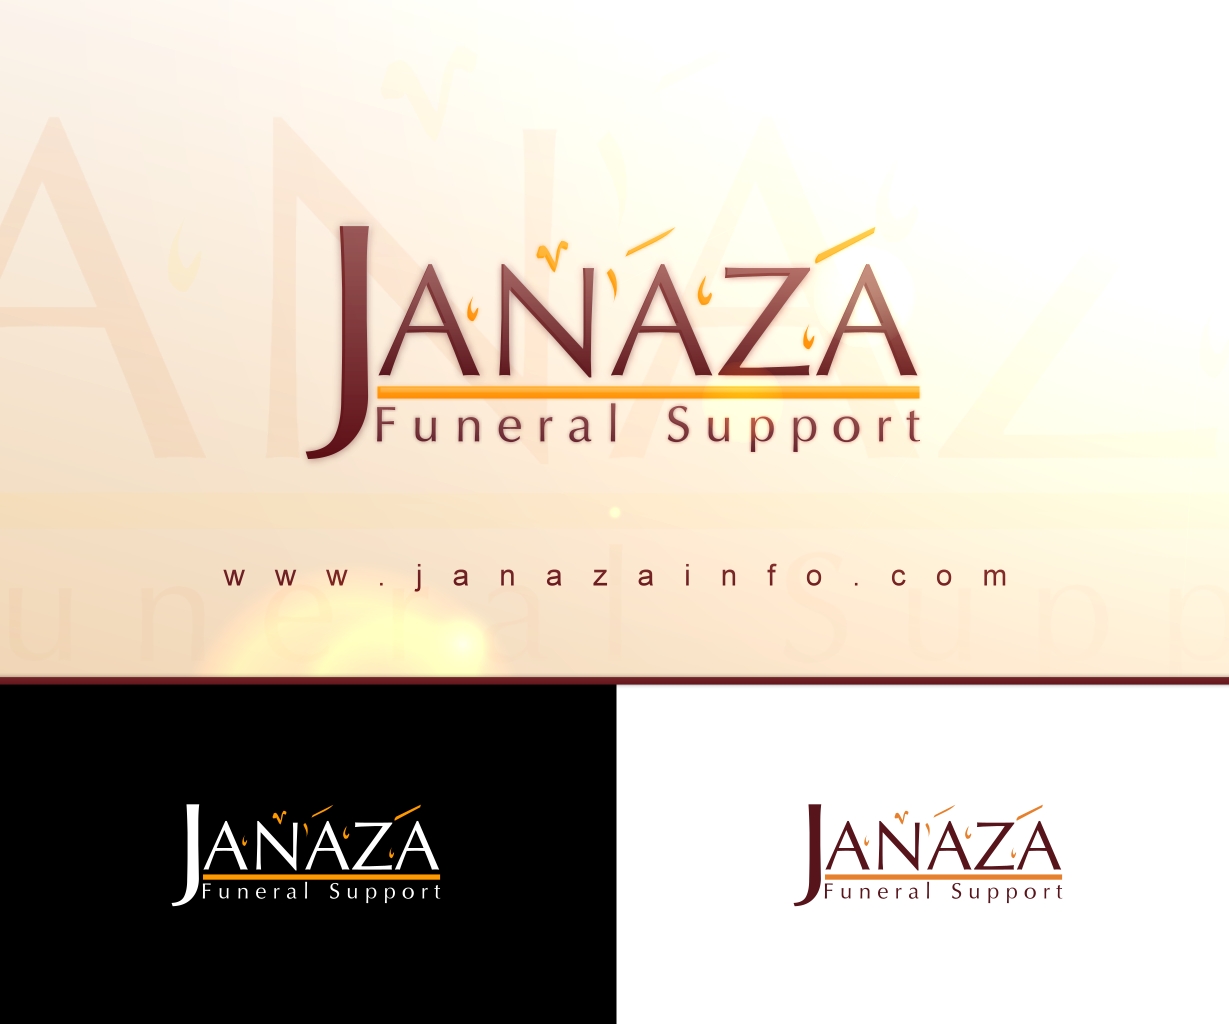 Janaza logo 2 by MS4d on DeviantArt